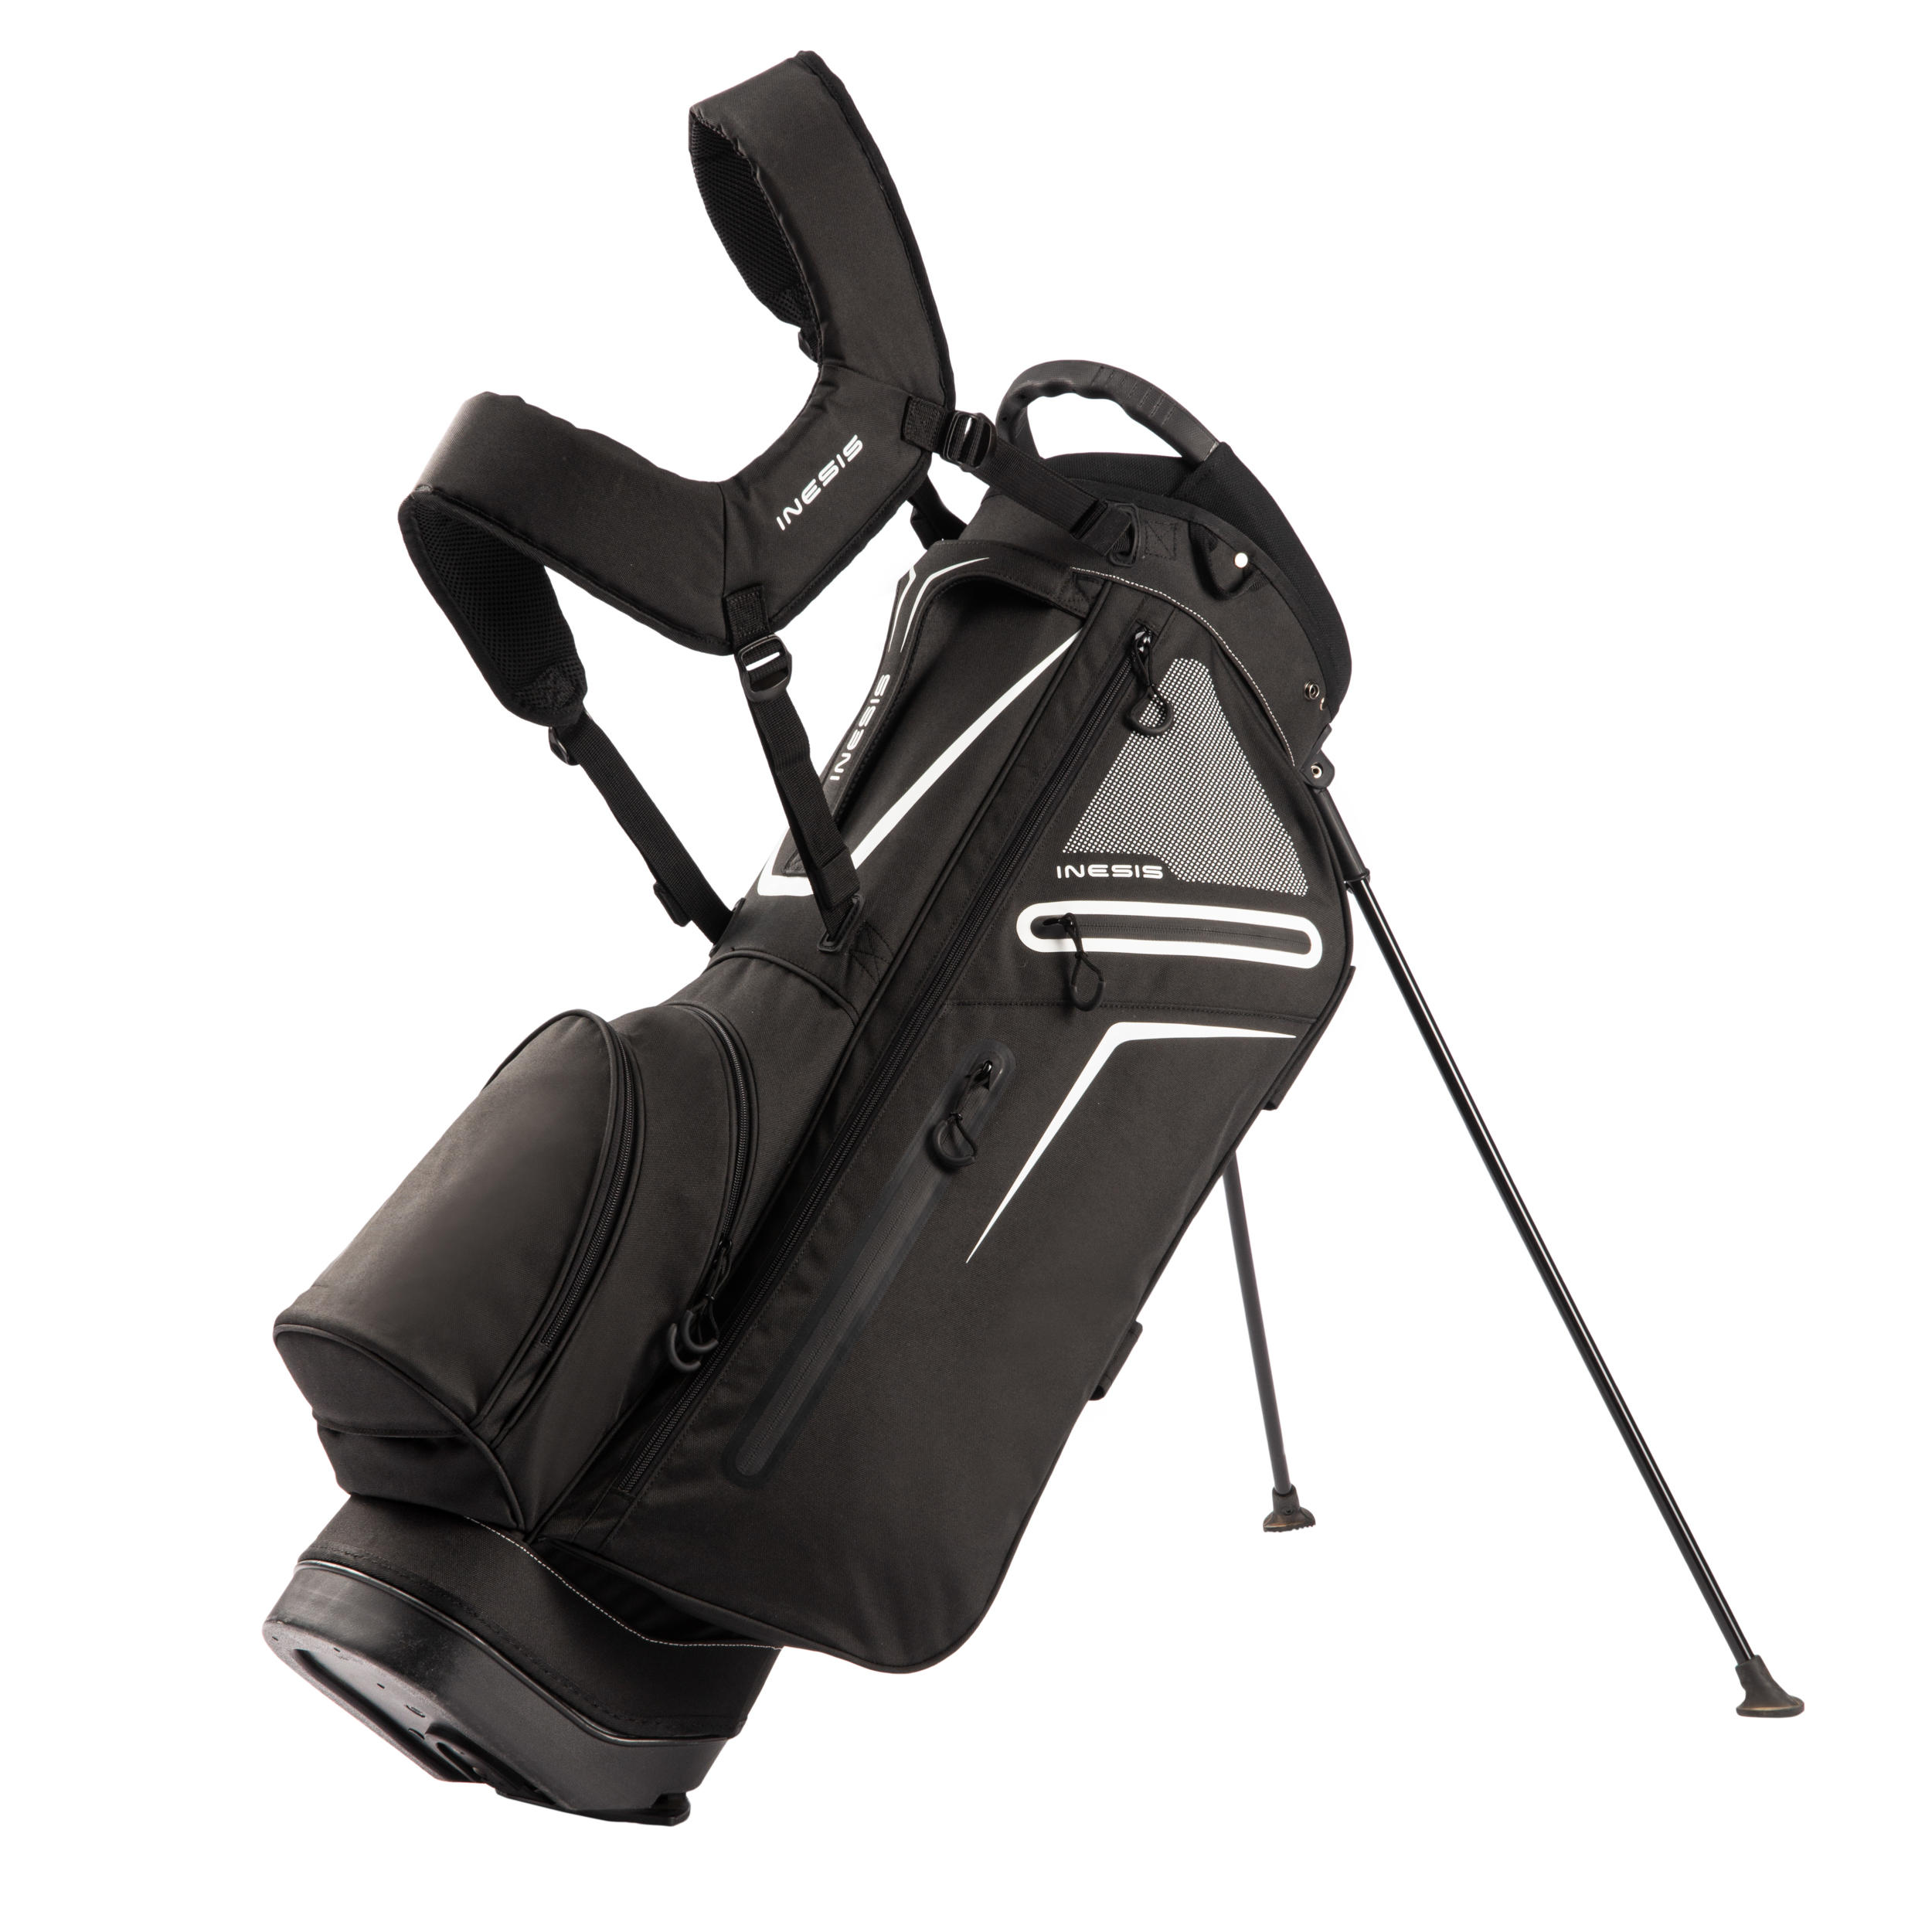 [ส่งฟรี ] ถุงกอล์ฟขาตั้งน้ำหนักเบา (สีดำ) Golf Light Stand Bag - Black ถุงกอล์ฟกันน้ำ ถุงกอล์ฟพกพา ถุงกอล์ฟขาตั้ง กระเป๋ากอล์ฟ กระเป๋าใส่ไม้กอล์ฟ Golf Bag Golf Bag Stand Golf bag cart